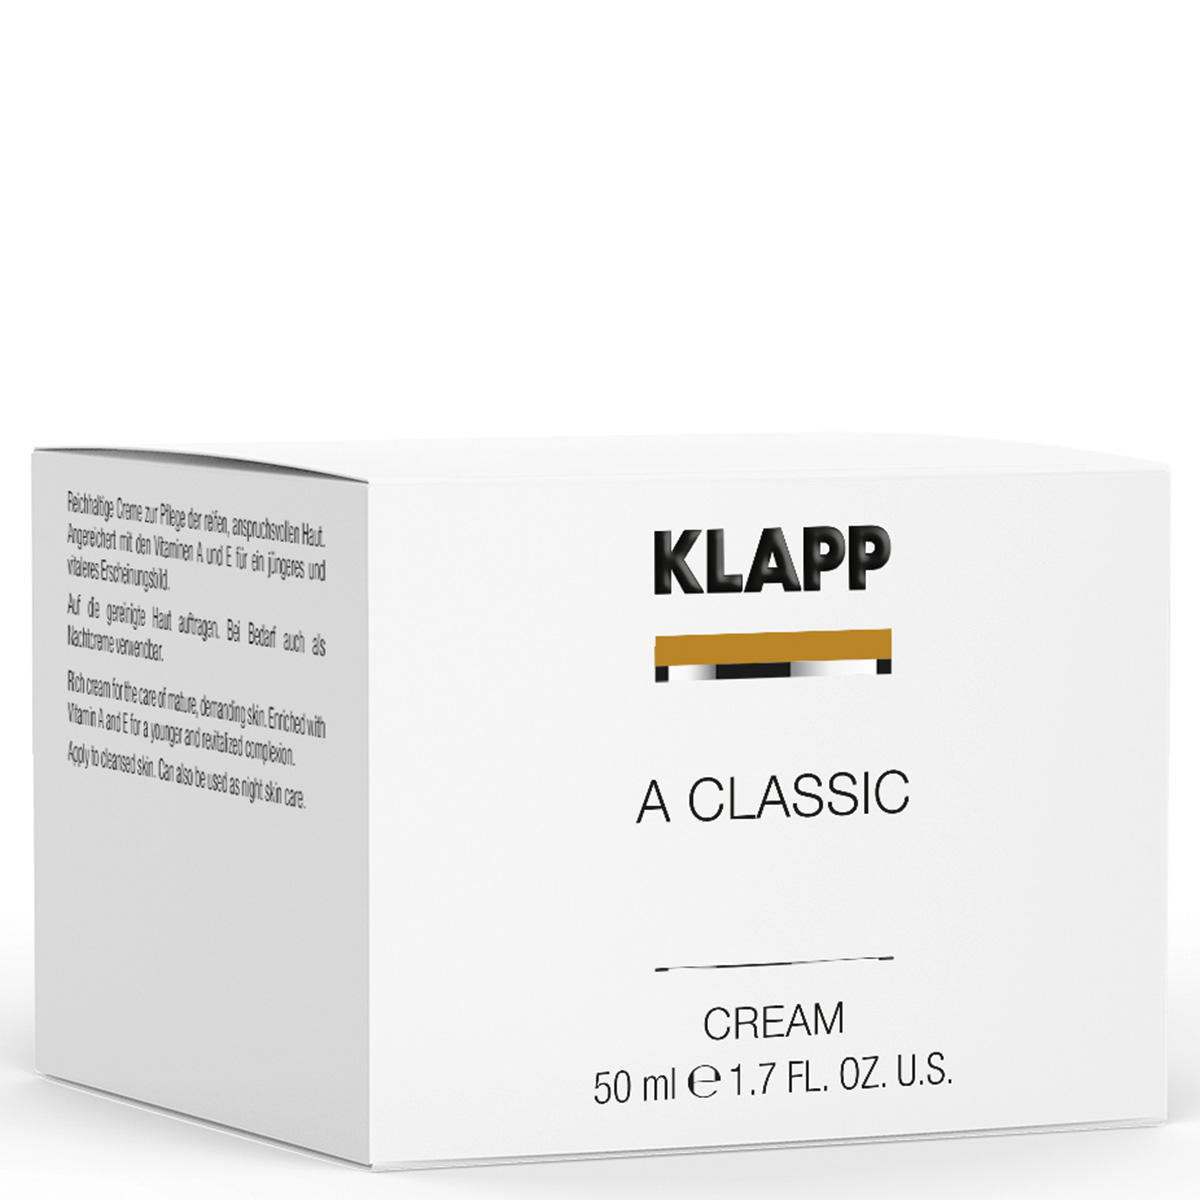 KLAPP A CLASSIC Cream 50 ml - 2